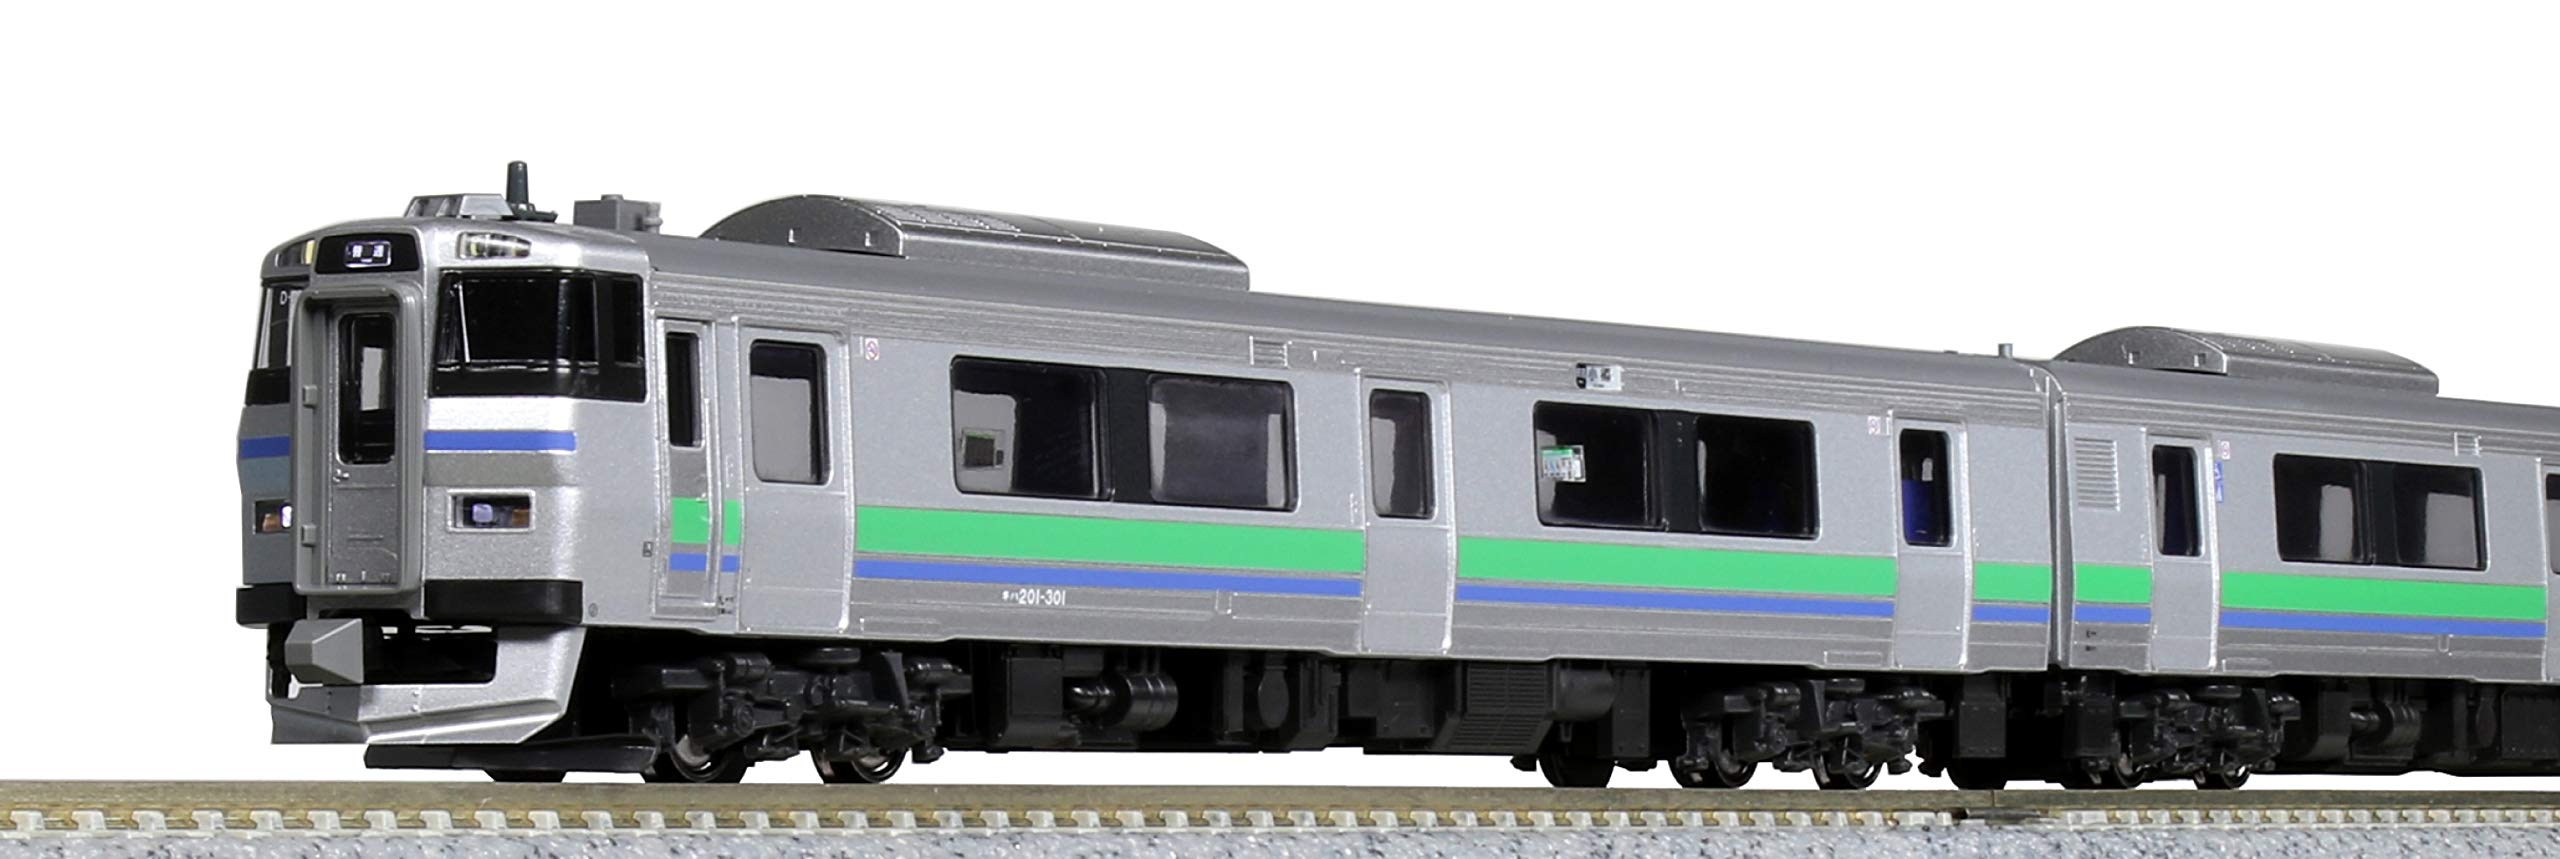 KATO N gauge diesel train 201 system Niseko liner 3-Car Set 101620 Model Train